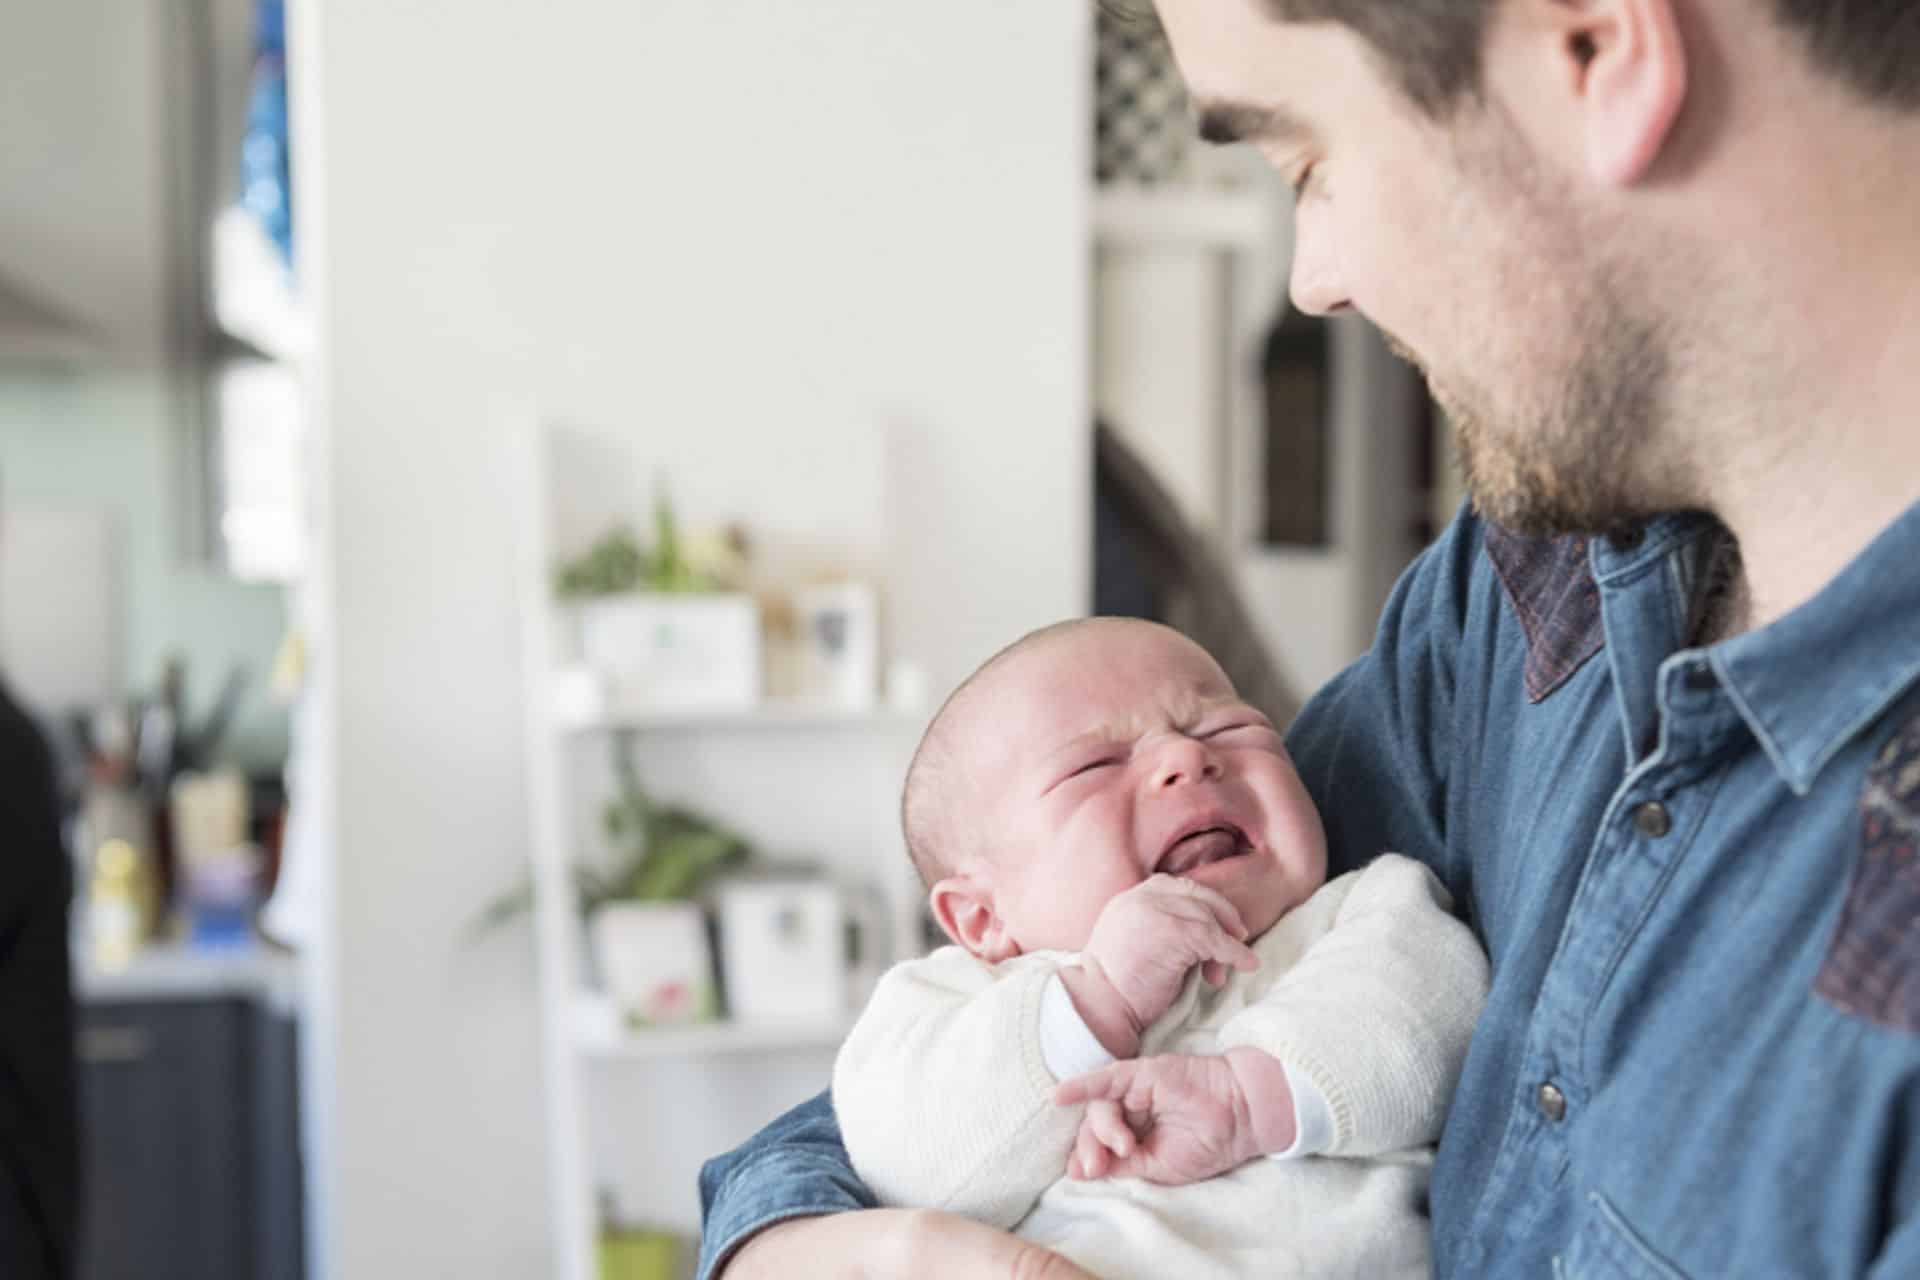 Opinie: 'Vaders hebben recht op met hun baby' | Goedgezind.be